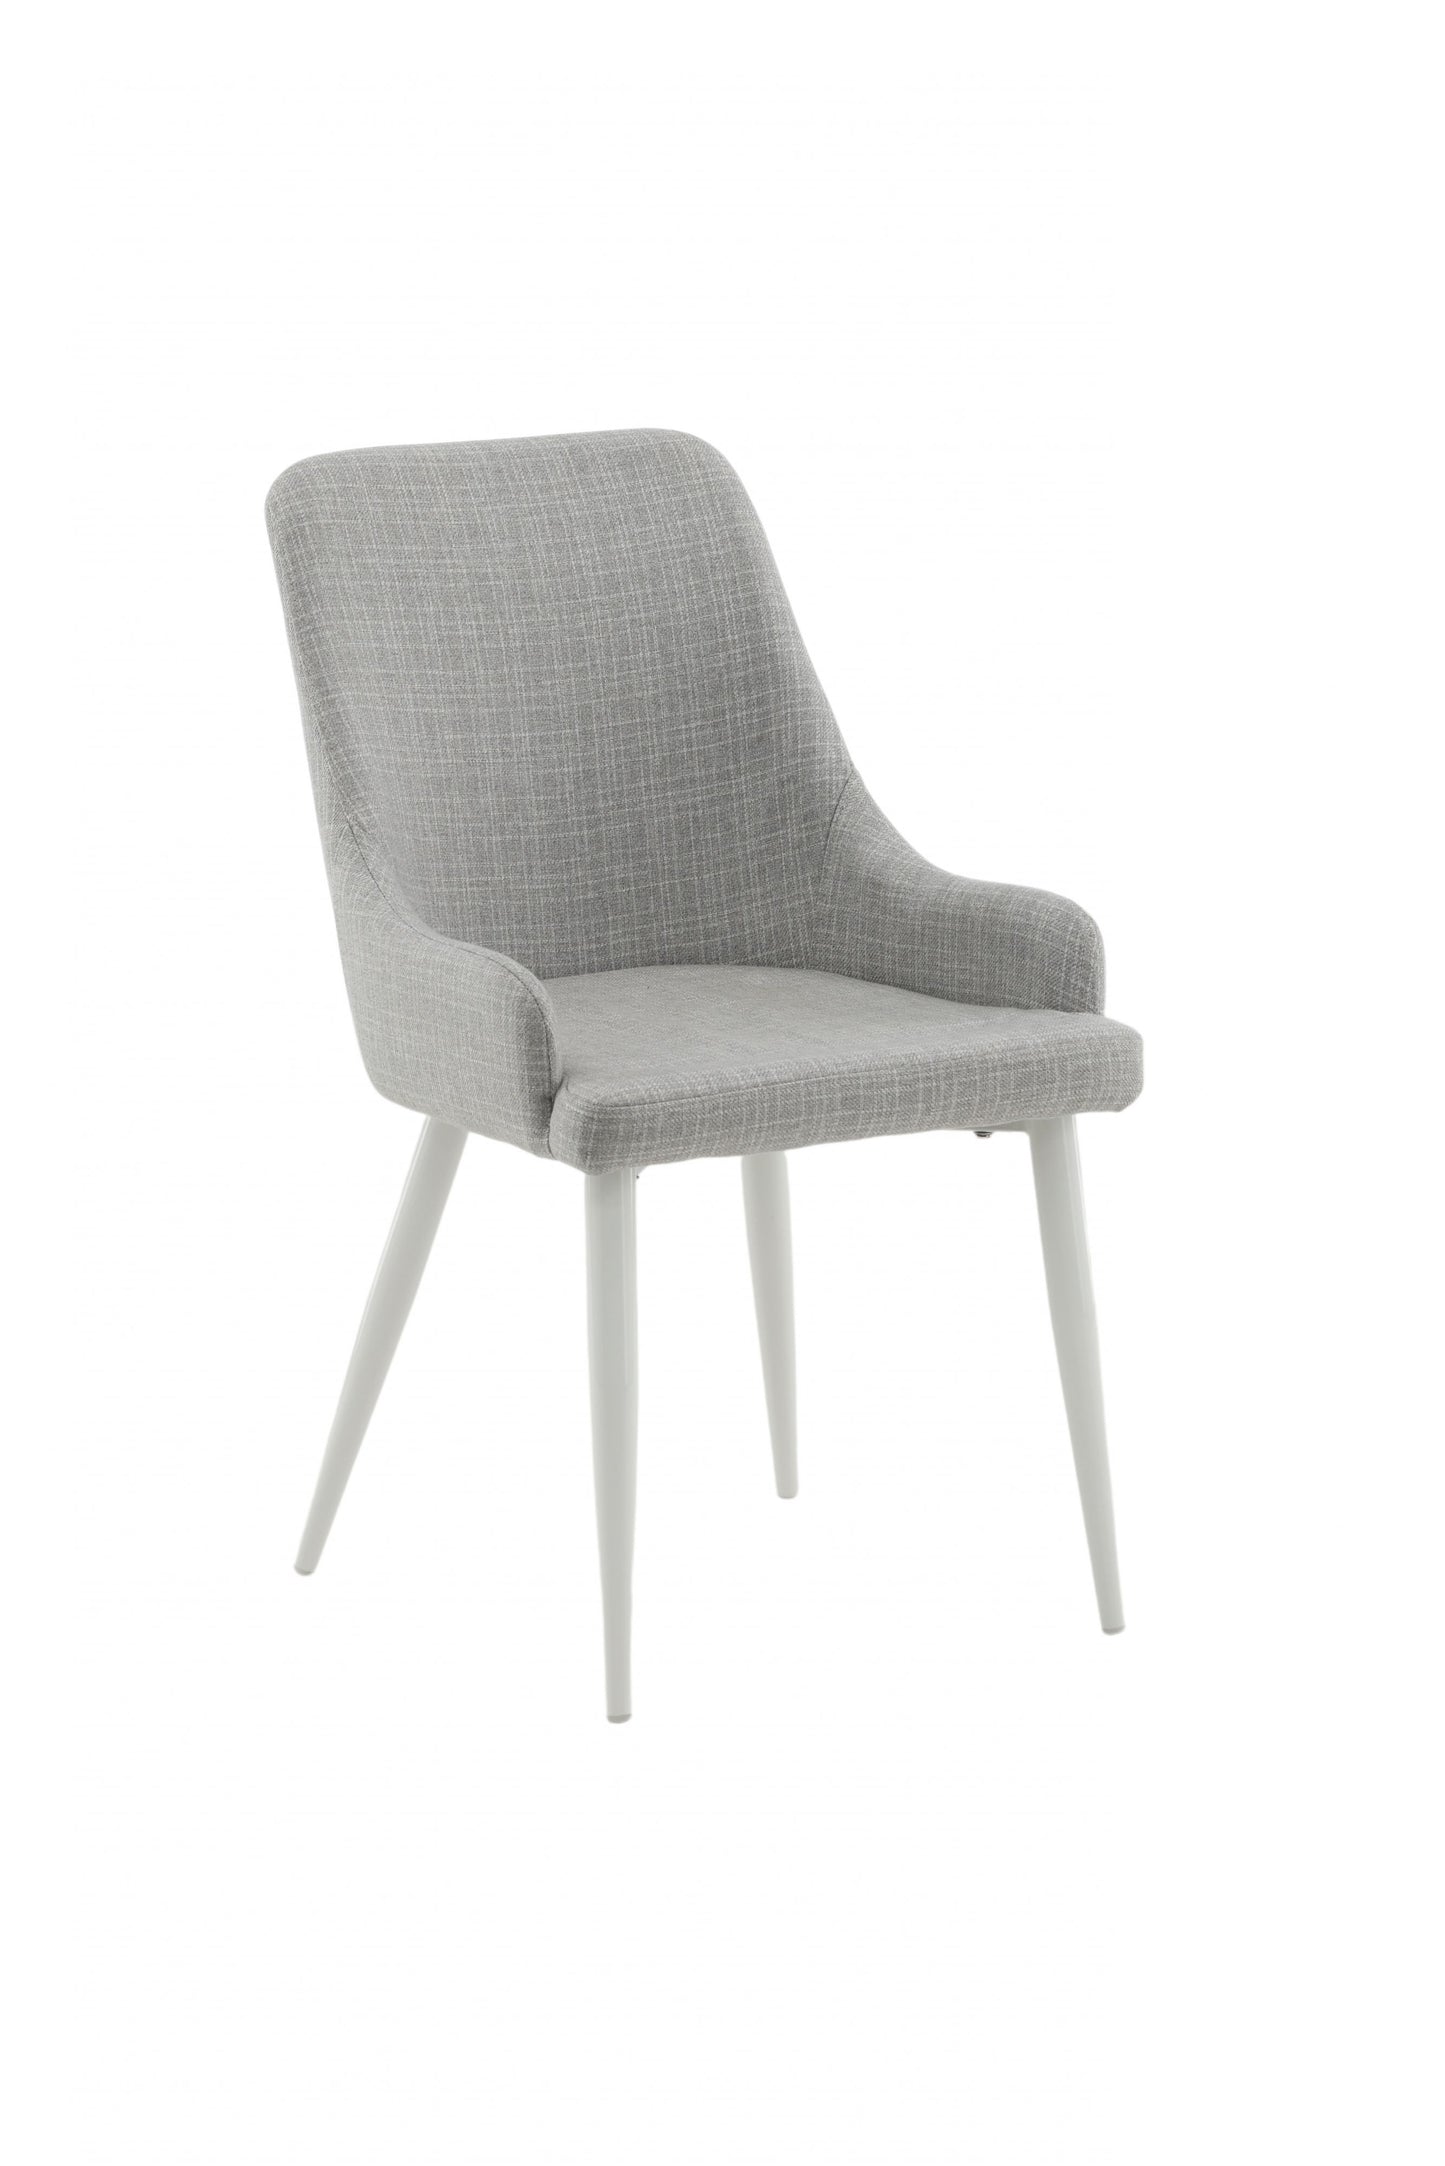 Plaza Spisebordsstol - Hvide ben - Lysegråt stof